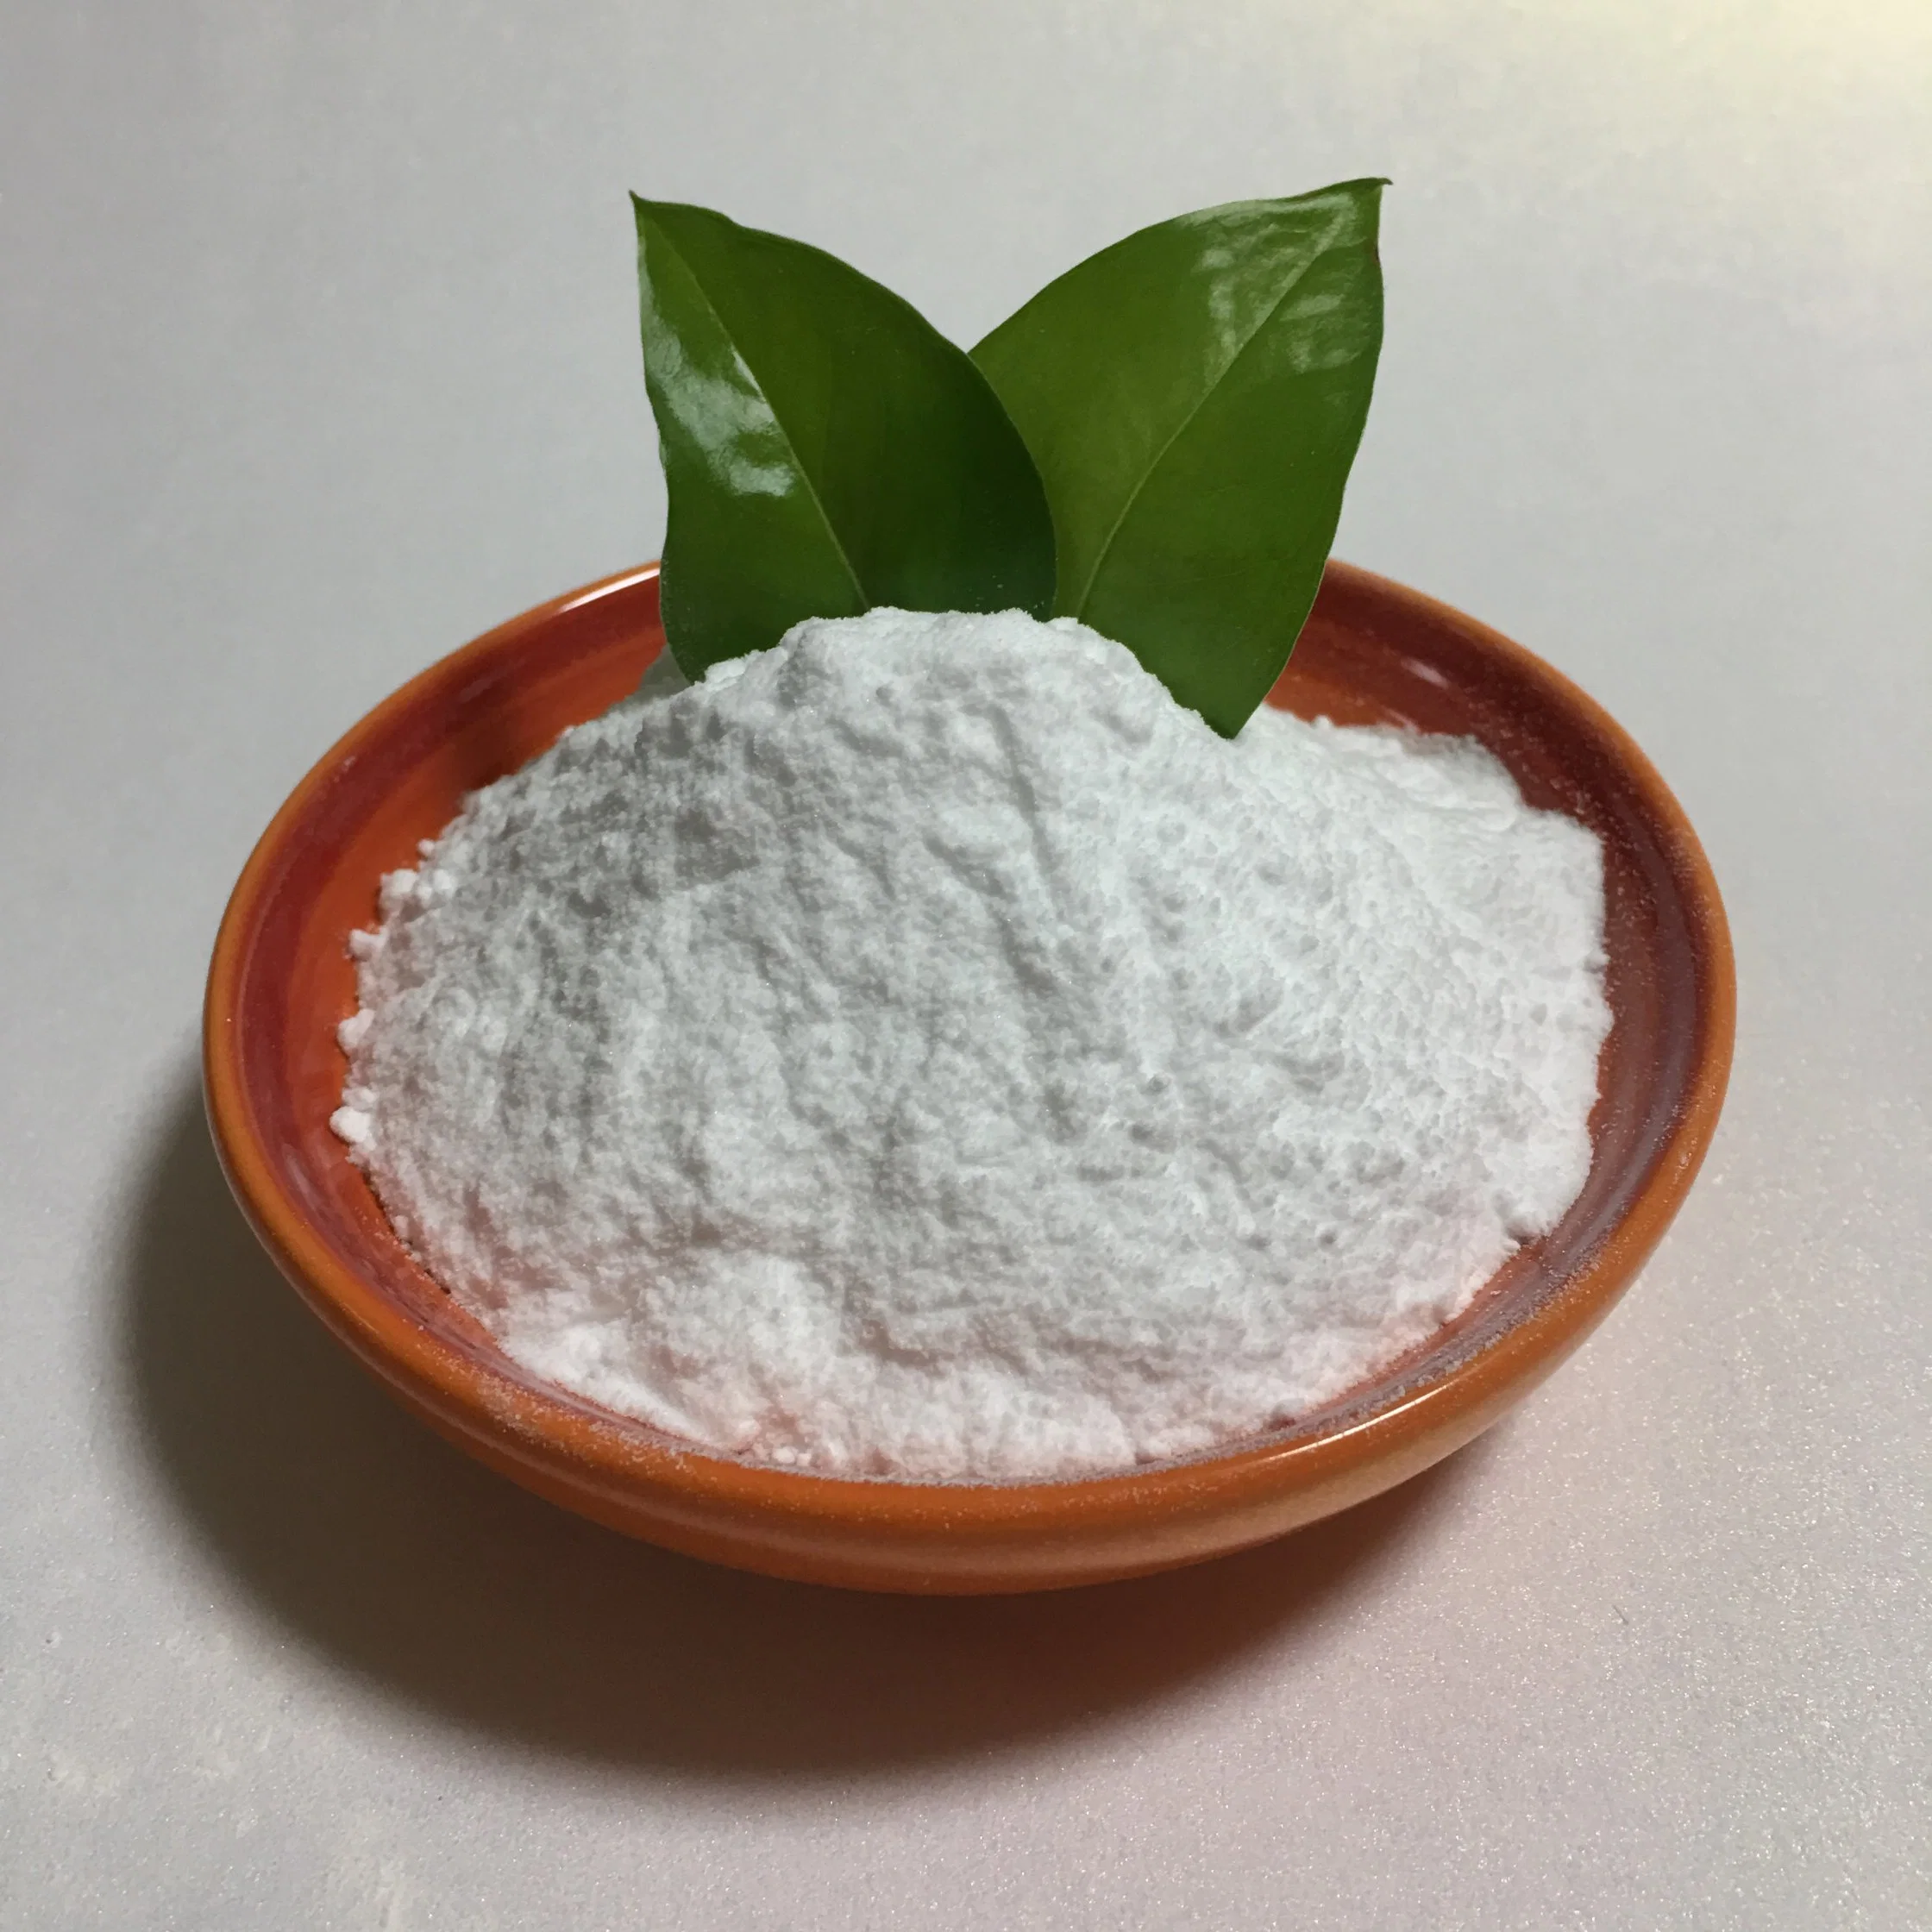 Monopotassium Phosphat MKP Pulver Lebensmittelzutat Lebensmittelqualität Lebensmittelzusatzstoff Hersteller Chemische Hohe Qualität